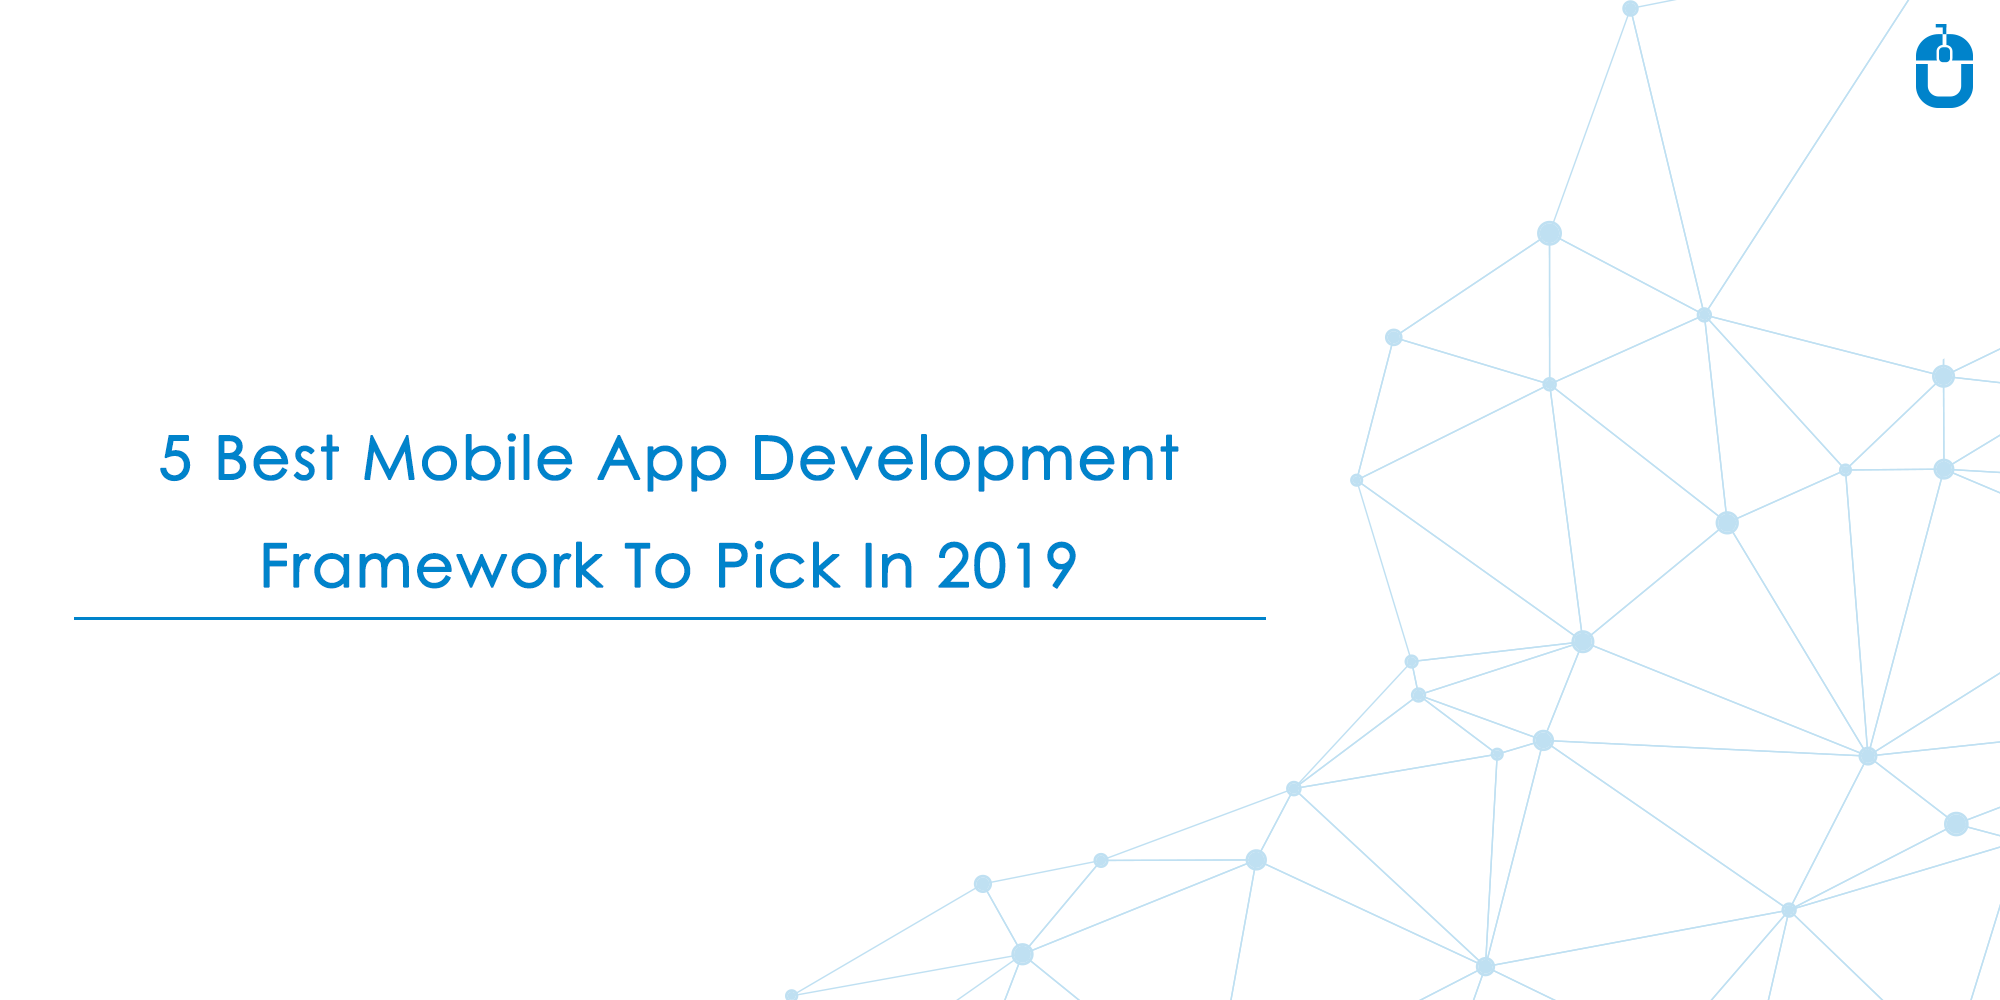 5 Best Mobile App Development Framework To Pick In 2019